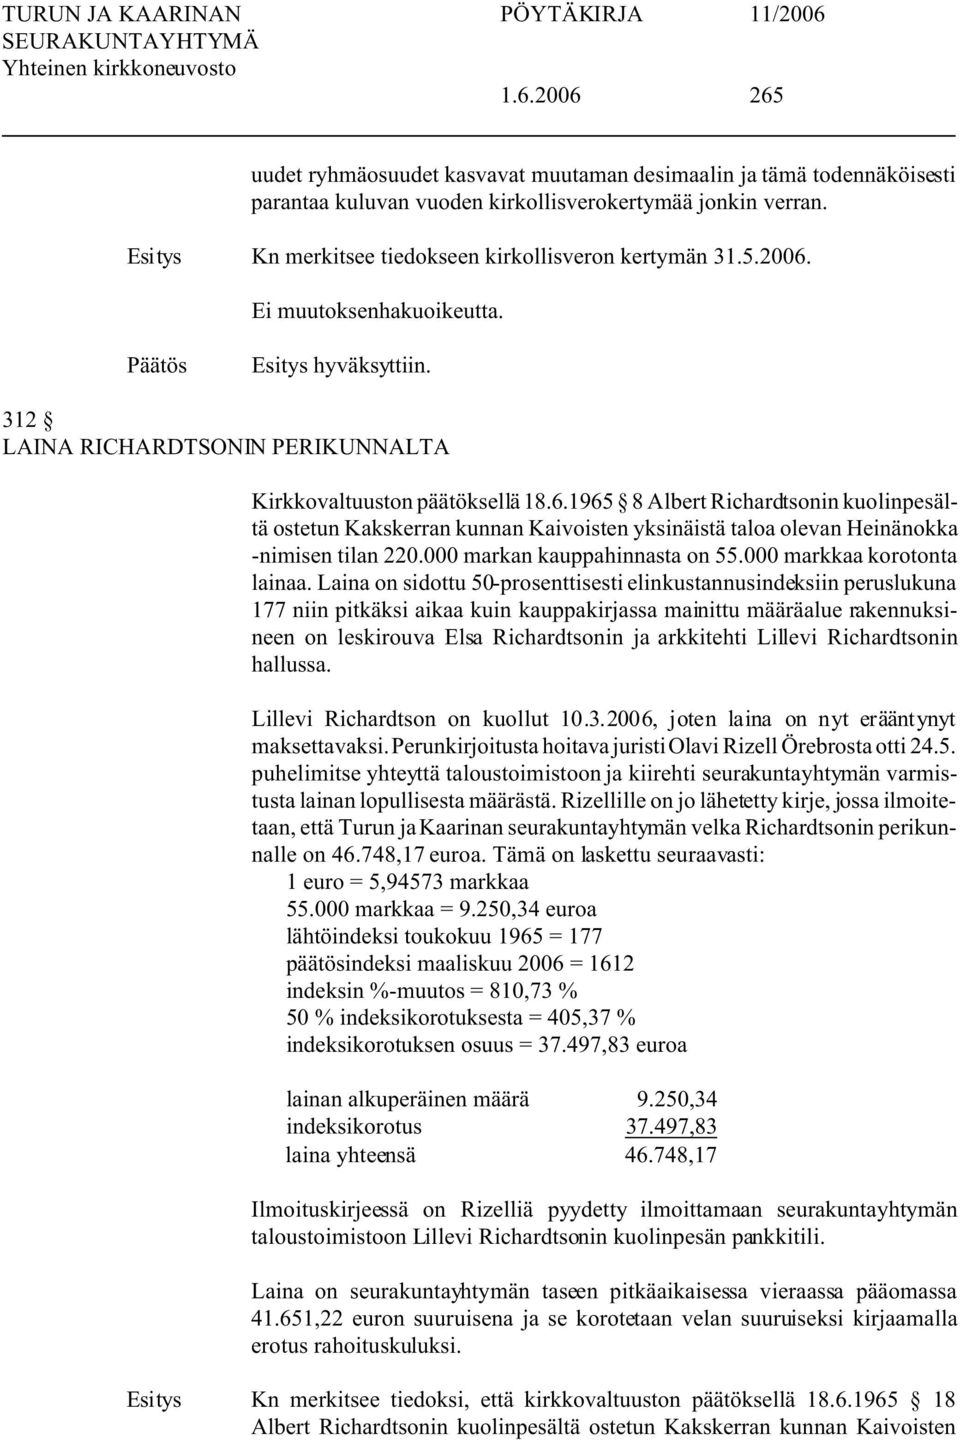 1965 8 Albert Richardtsonin kuolinpesältä ostetun Kakskerran kunnan Kaivoisten yksinäistä taloa olevan Heinänokka -nimisen tilan 220.000 markan kauppahinnasta on 55.000 markkaa korotonta lainaa.